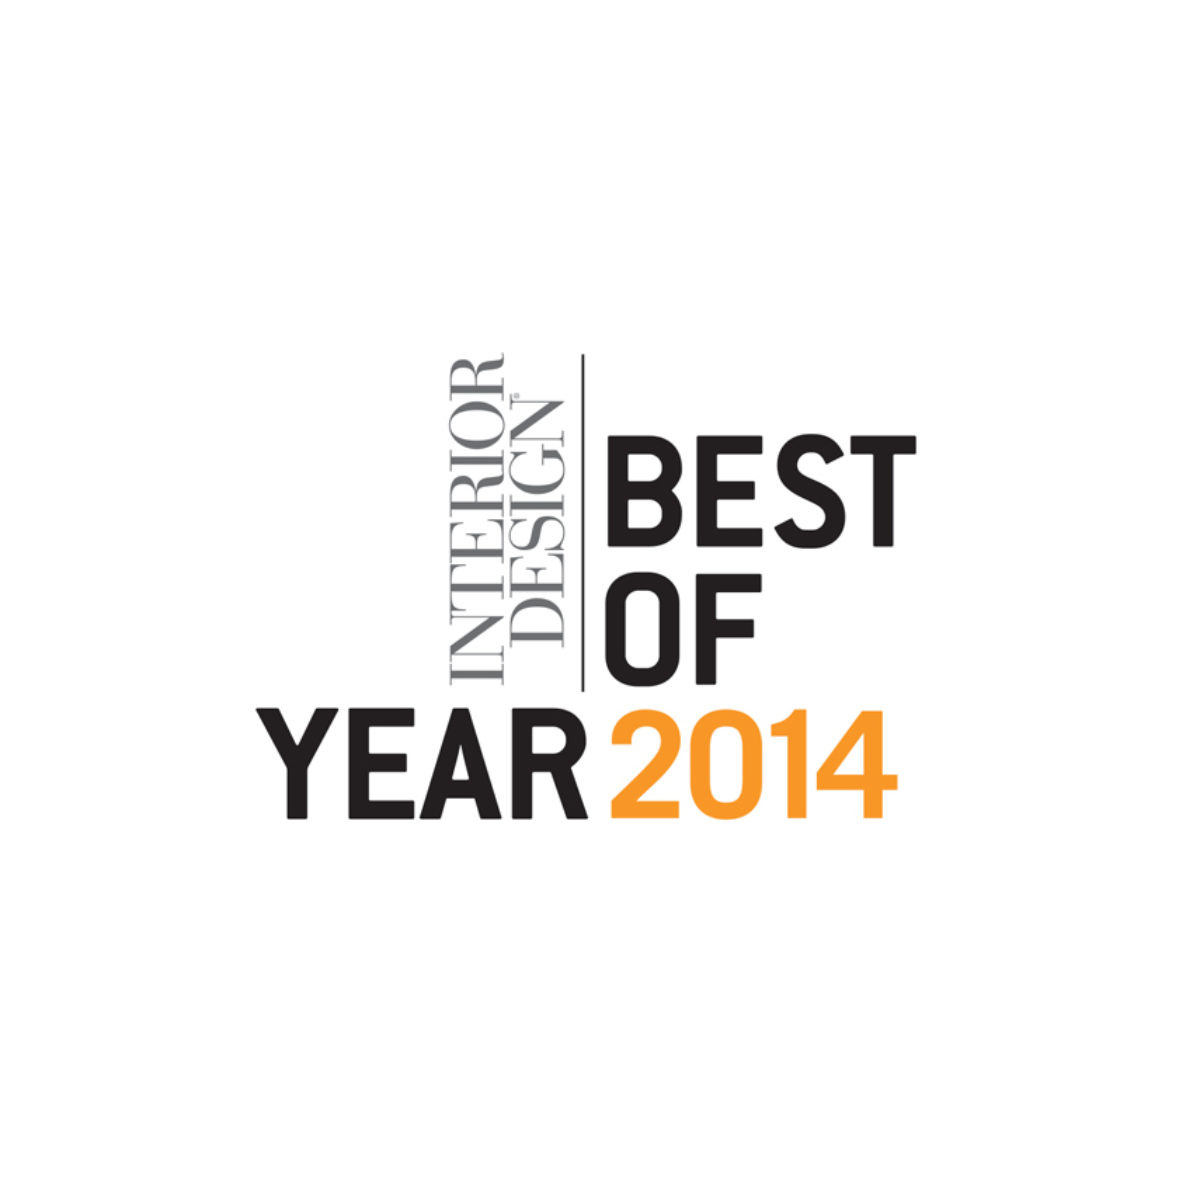 Interior Design Best of Year 2014 logo